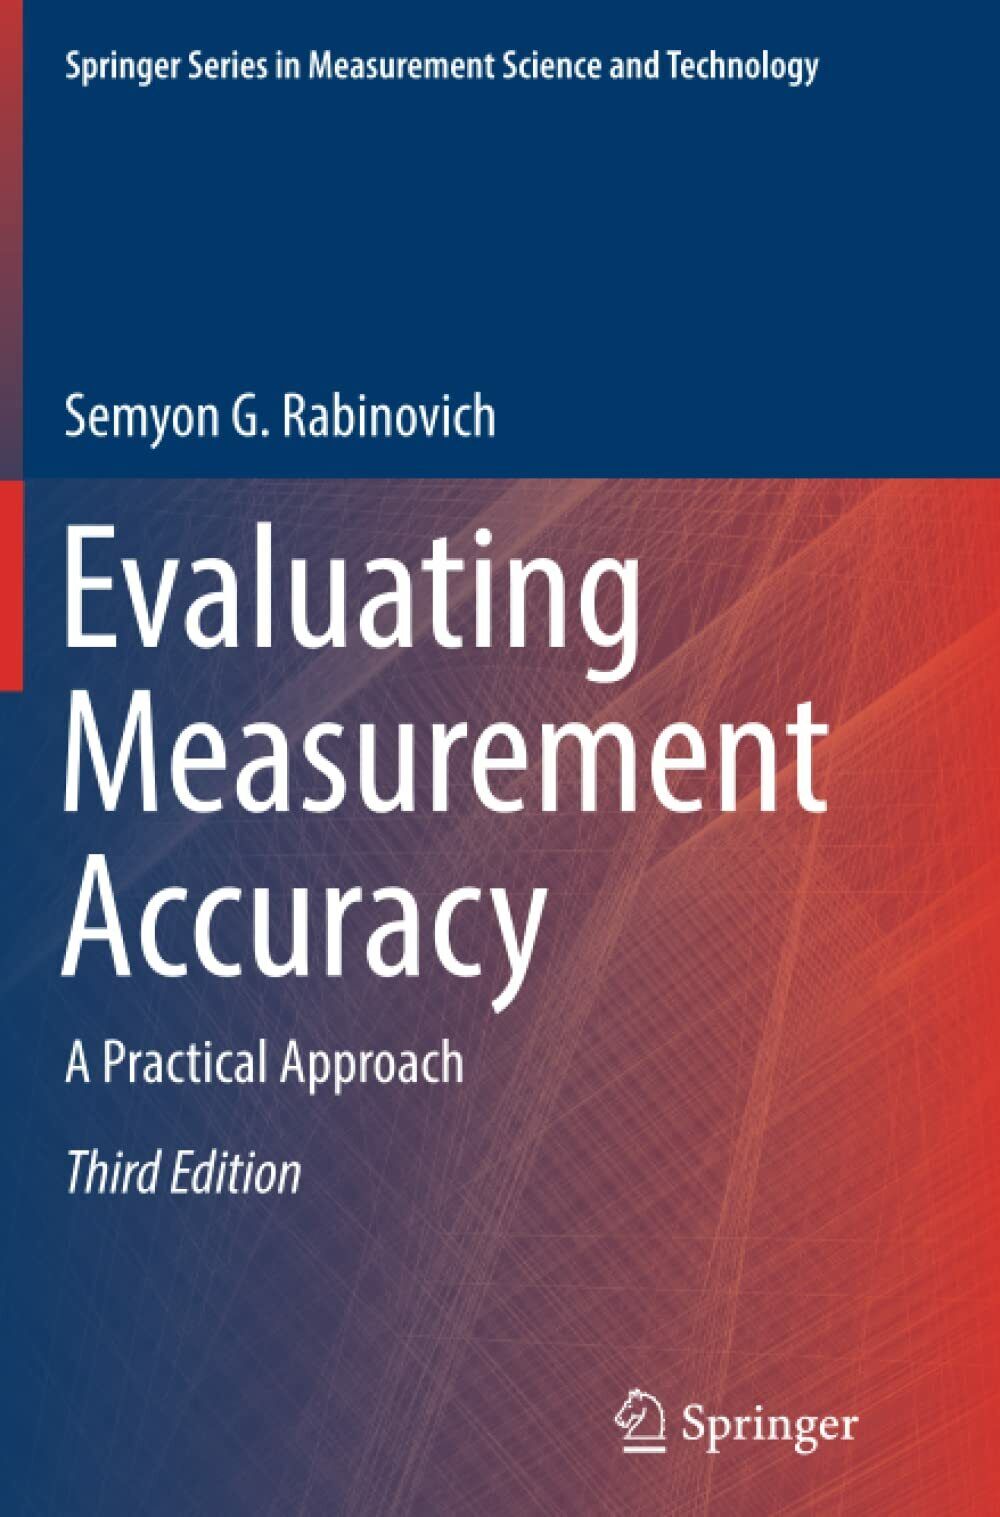 Evaluating Measurement Accuracy - Semyon G. Rabinovich - Springer, 2018